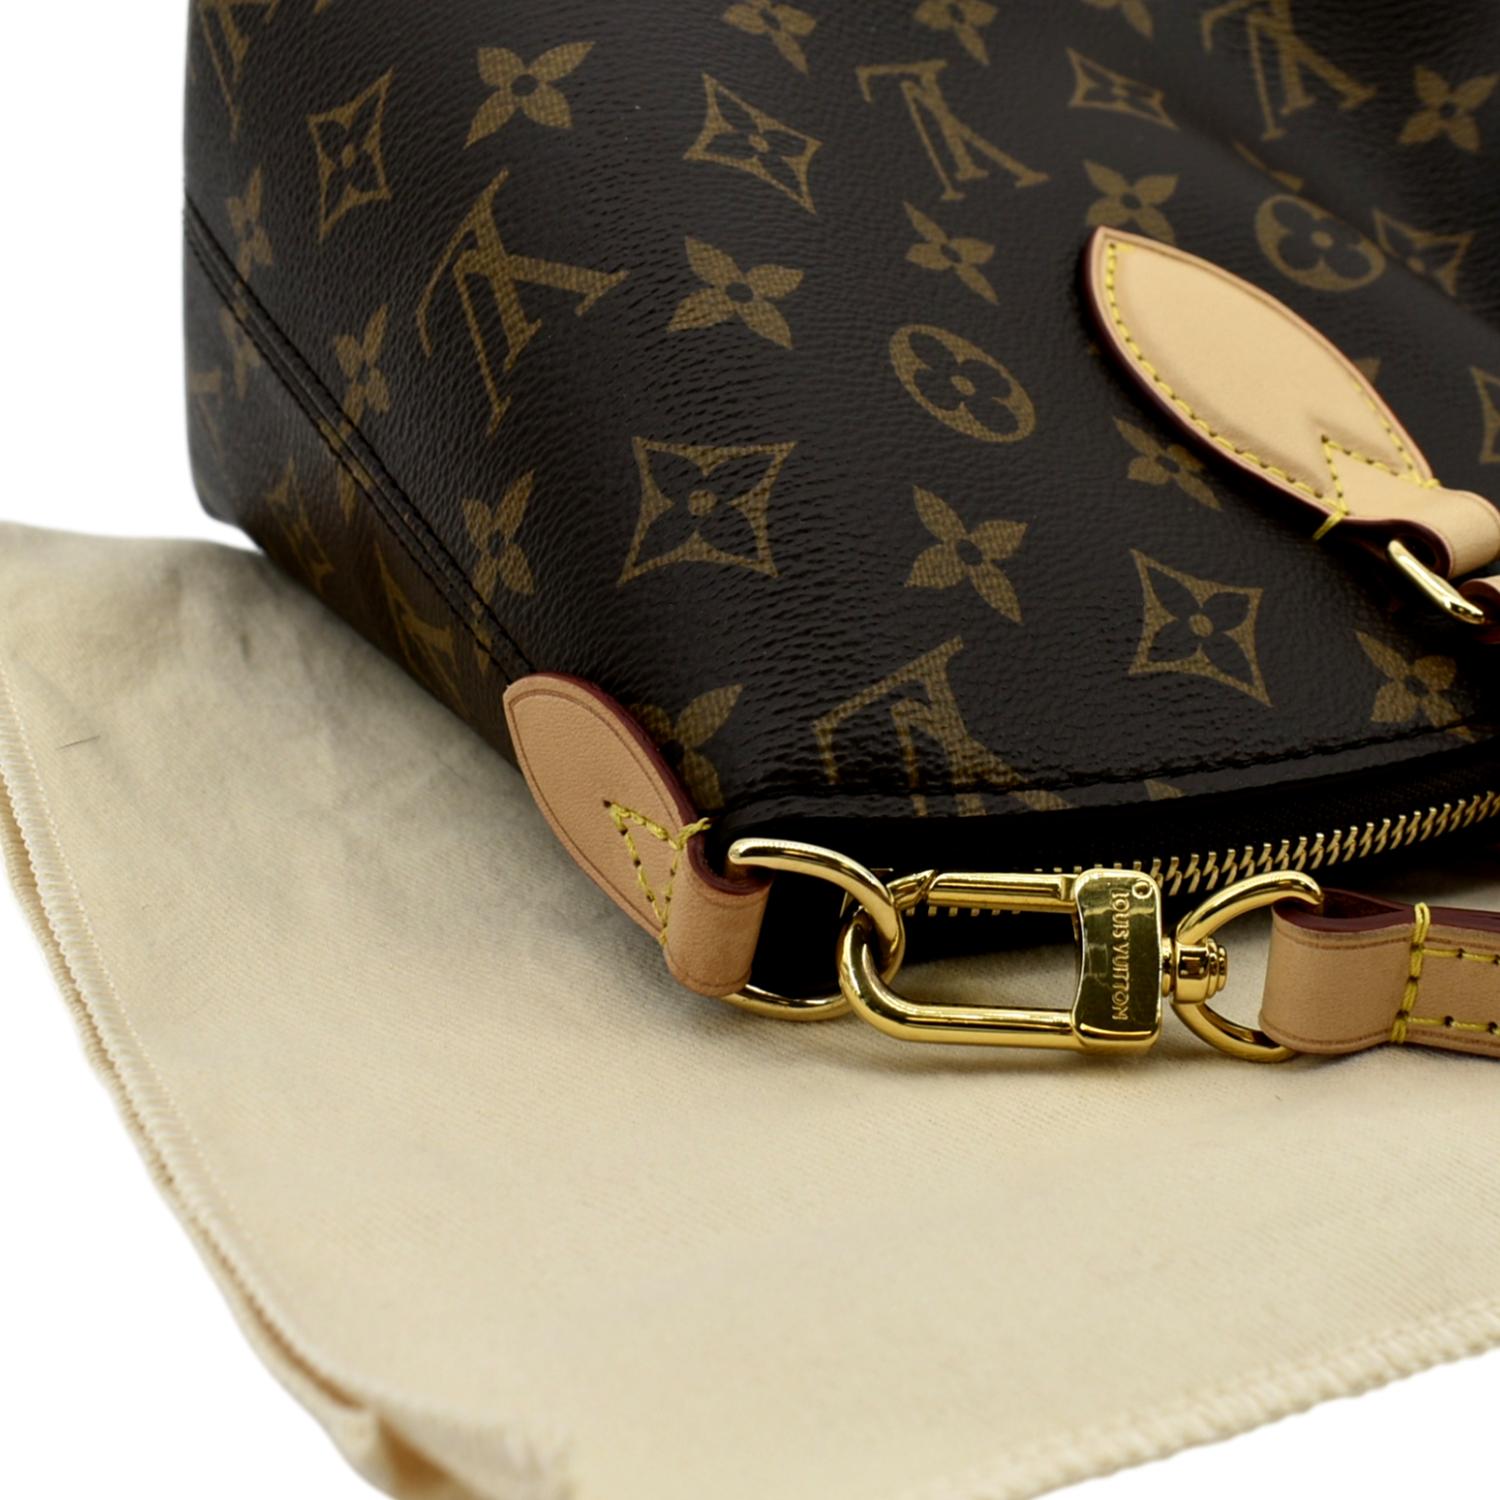 Louis Vuitton Boetie PM Monogram Canvas Handbag on SALE